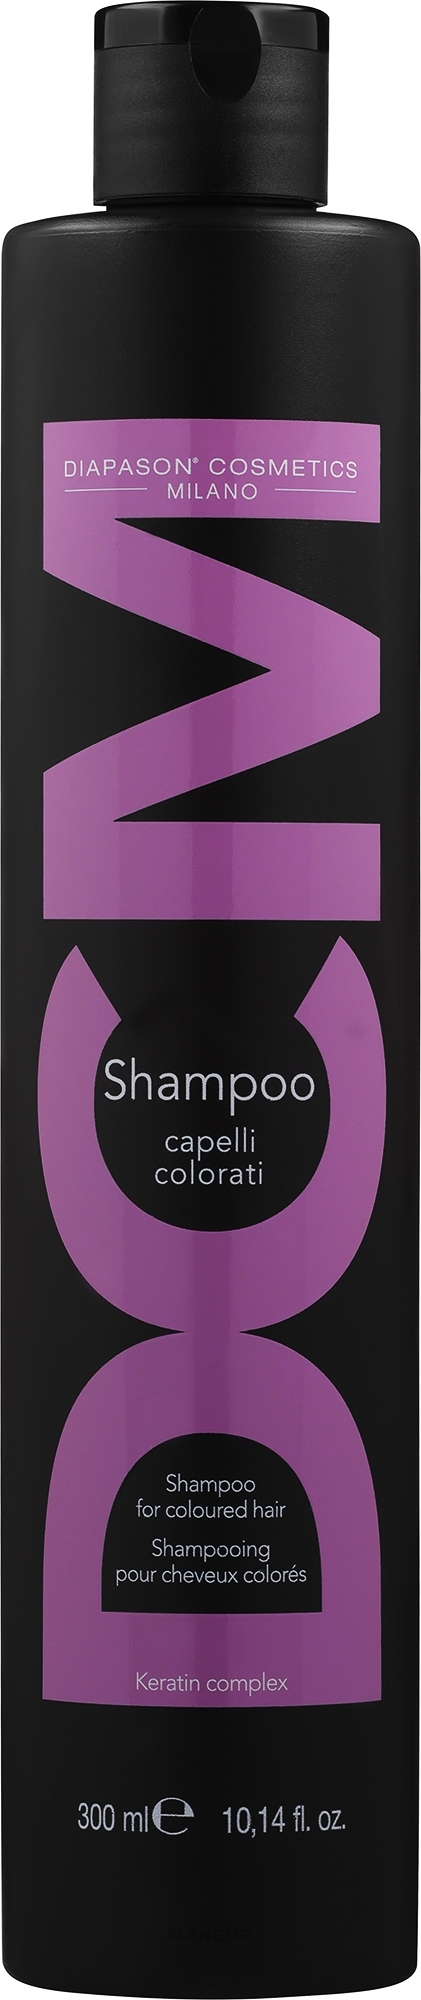 Шампунь для захисту кольору і відновлення фарбованого волосся - DCM Keratin Complex Shampoo For Coloured Hair — фото 300ml